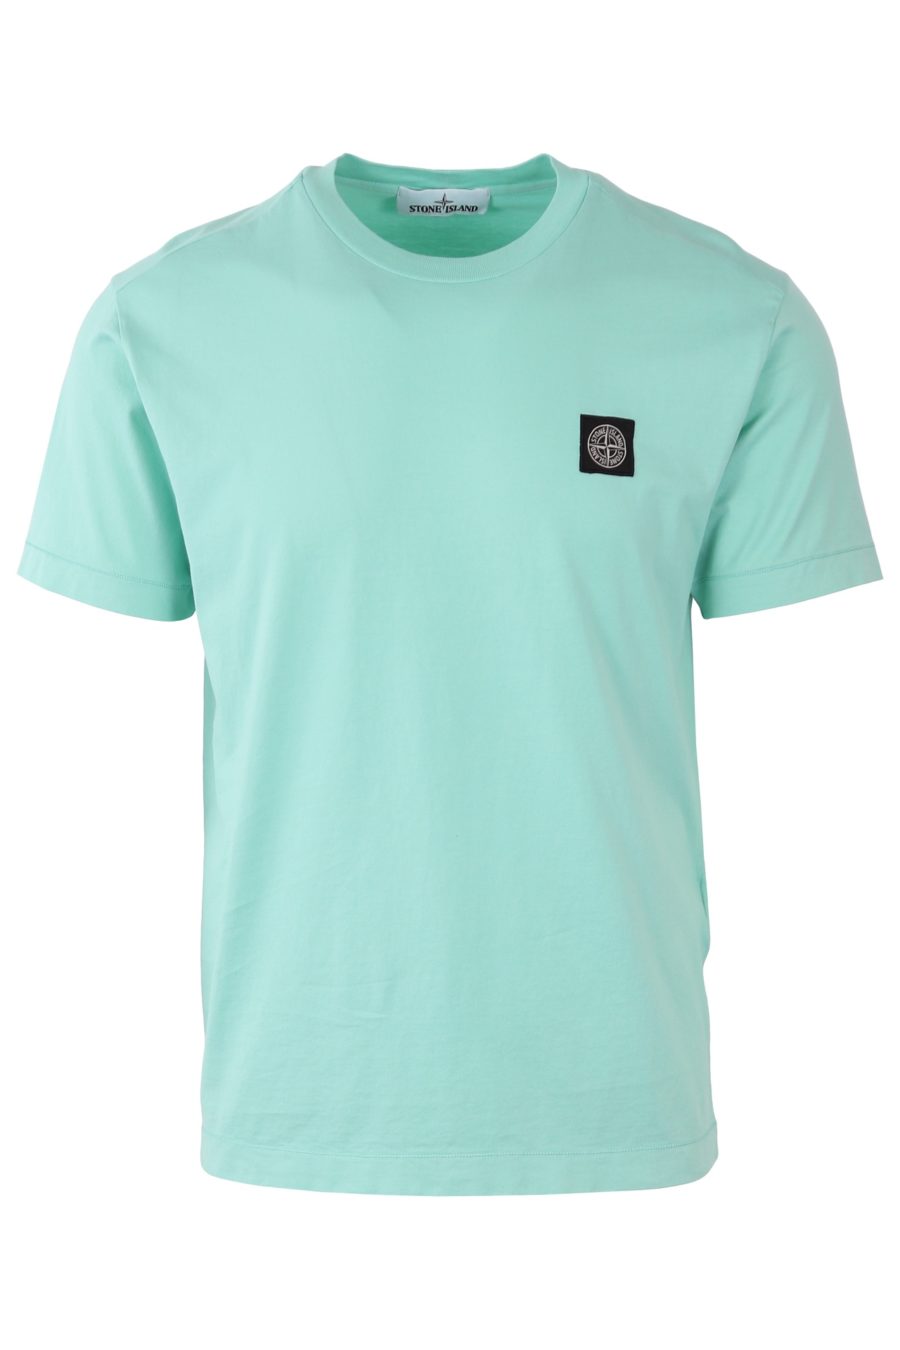 Camiseta Stone Island color menta con logo parche - 01ff4e8bbca9210a8576191f82ed11f533c23cfe